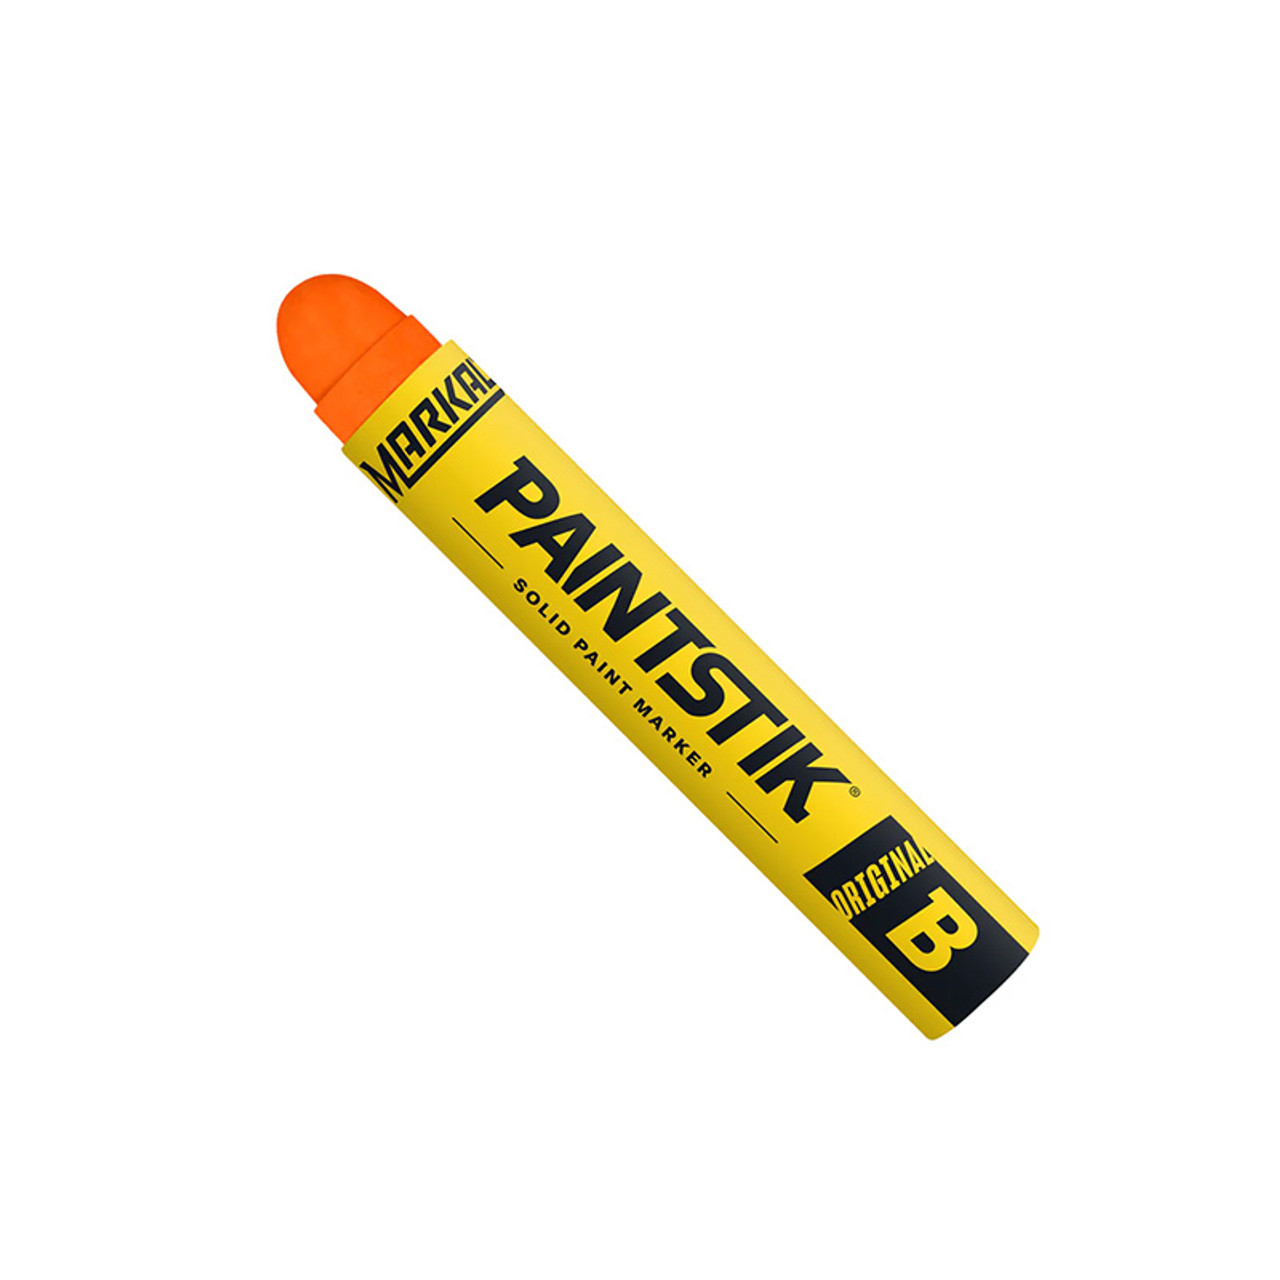 Markal F Fluorescent Orange Paintstik Marking Marker (Markal 82834